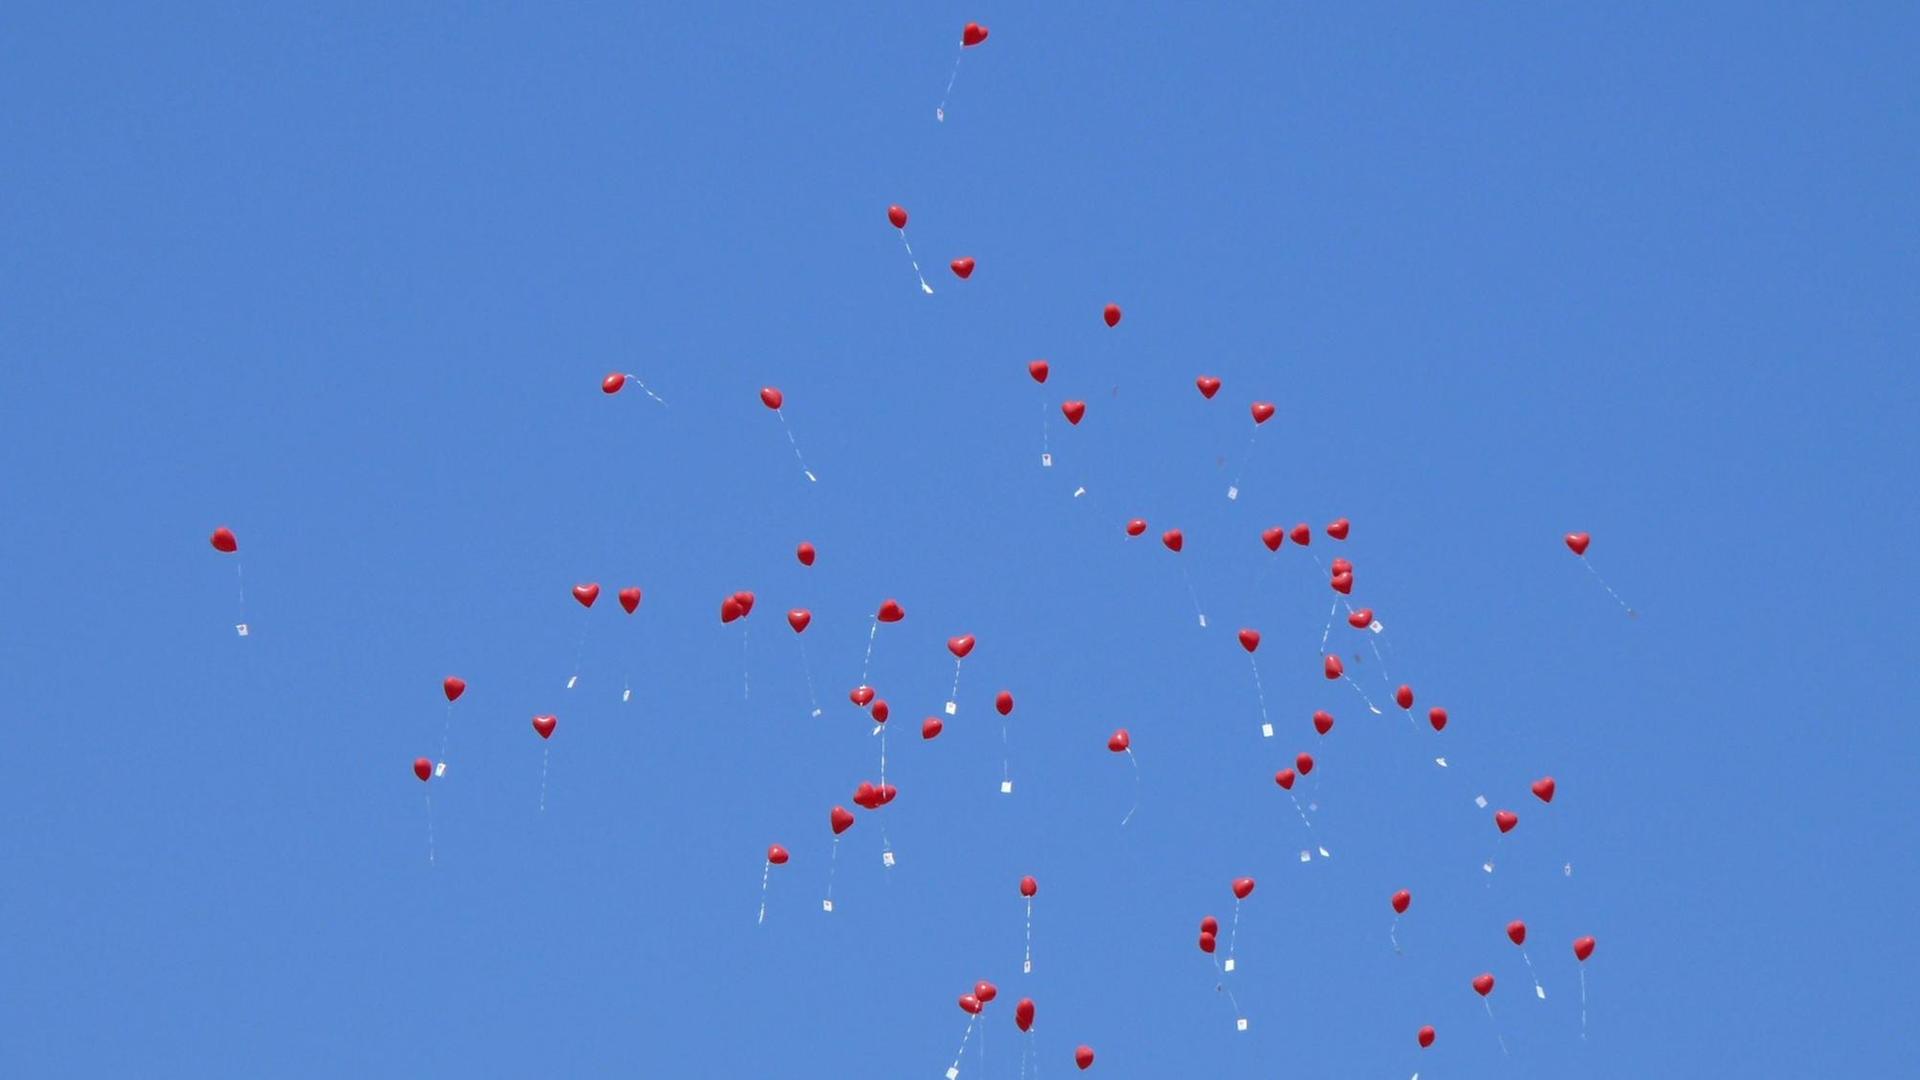 Fliegende rote Luftballons am blauen Himmel.